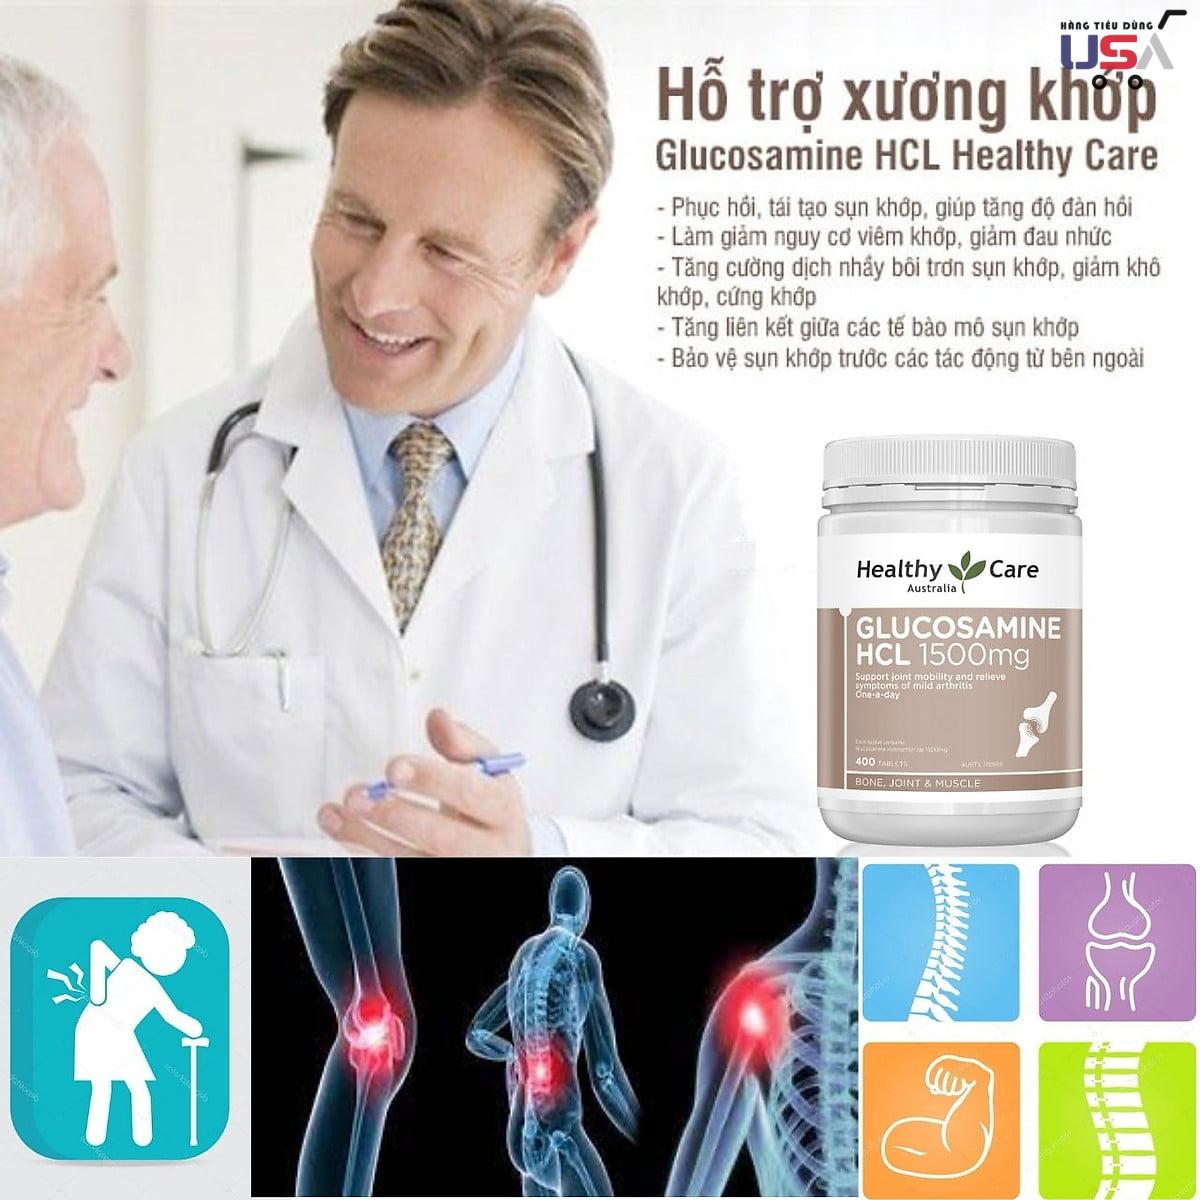 hang-tieu-dung-usa-Glucosamine-HCL-1500mg-bo-xuong-khop-Healthy-Care-400-vien